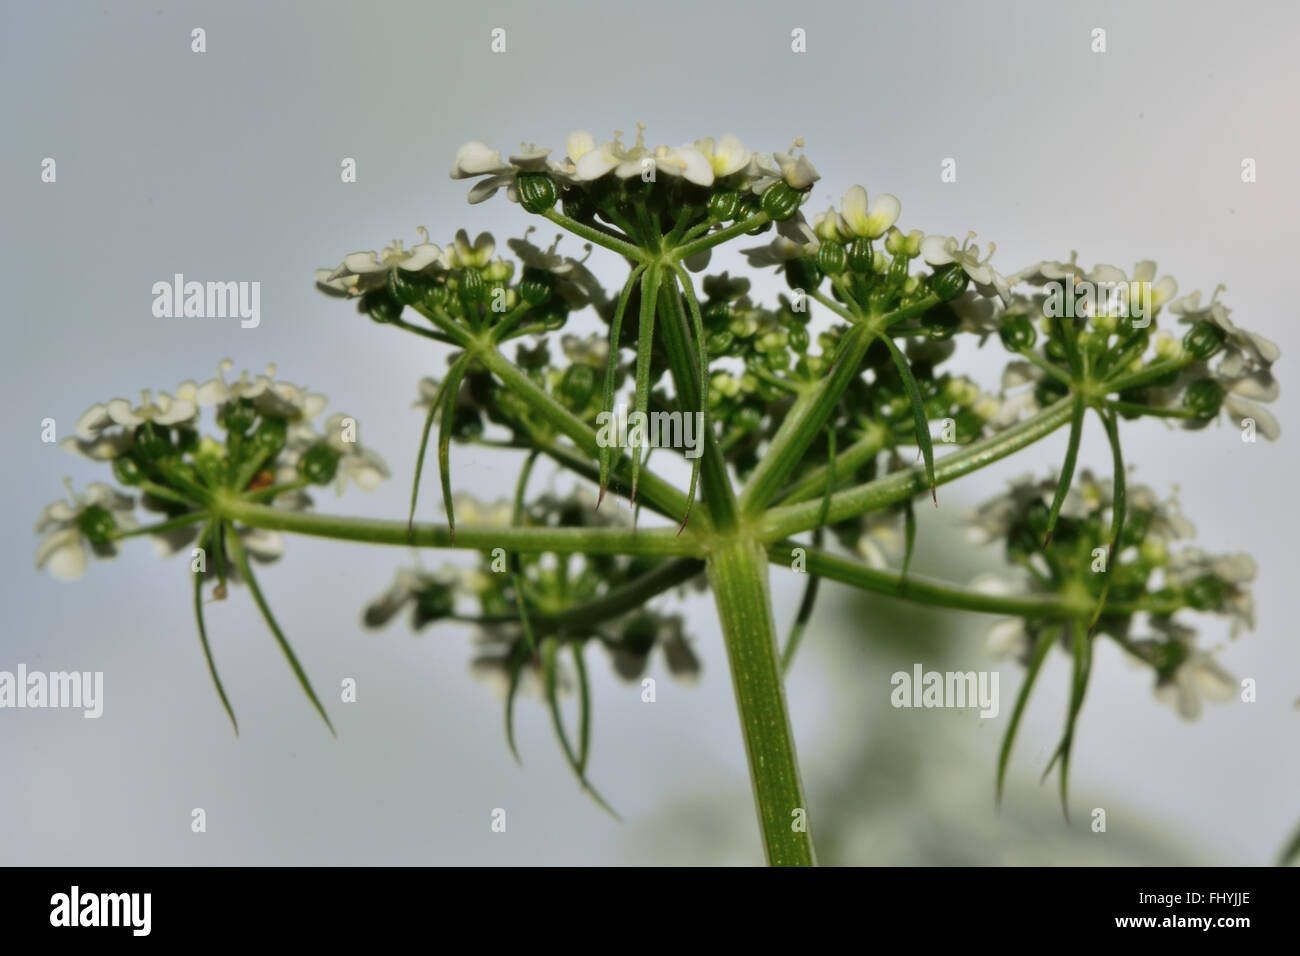 Hundspetersilie (Aethusa Cynapium). In der Karotte-Familie (Apiaceae) mit Dolde von weißen Blumen Pflanzen Stockfoto